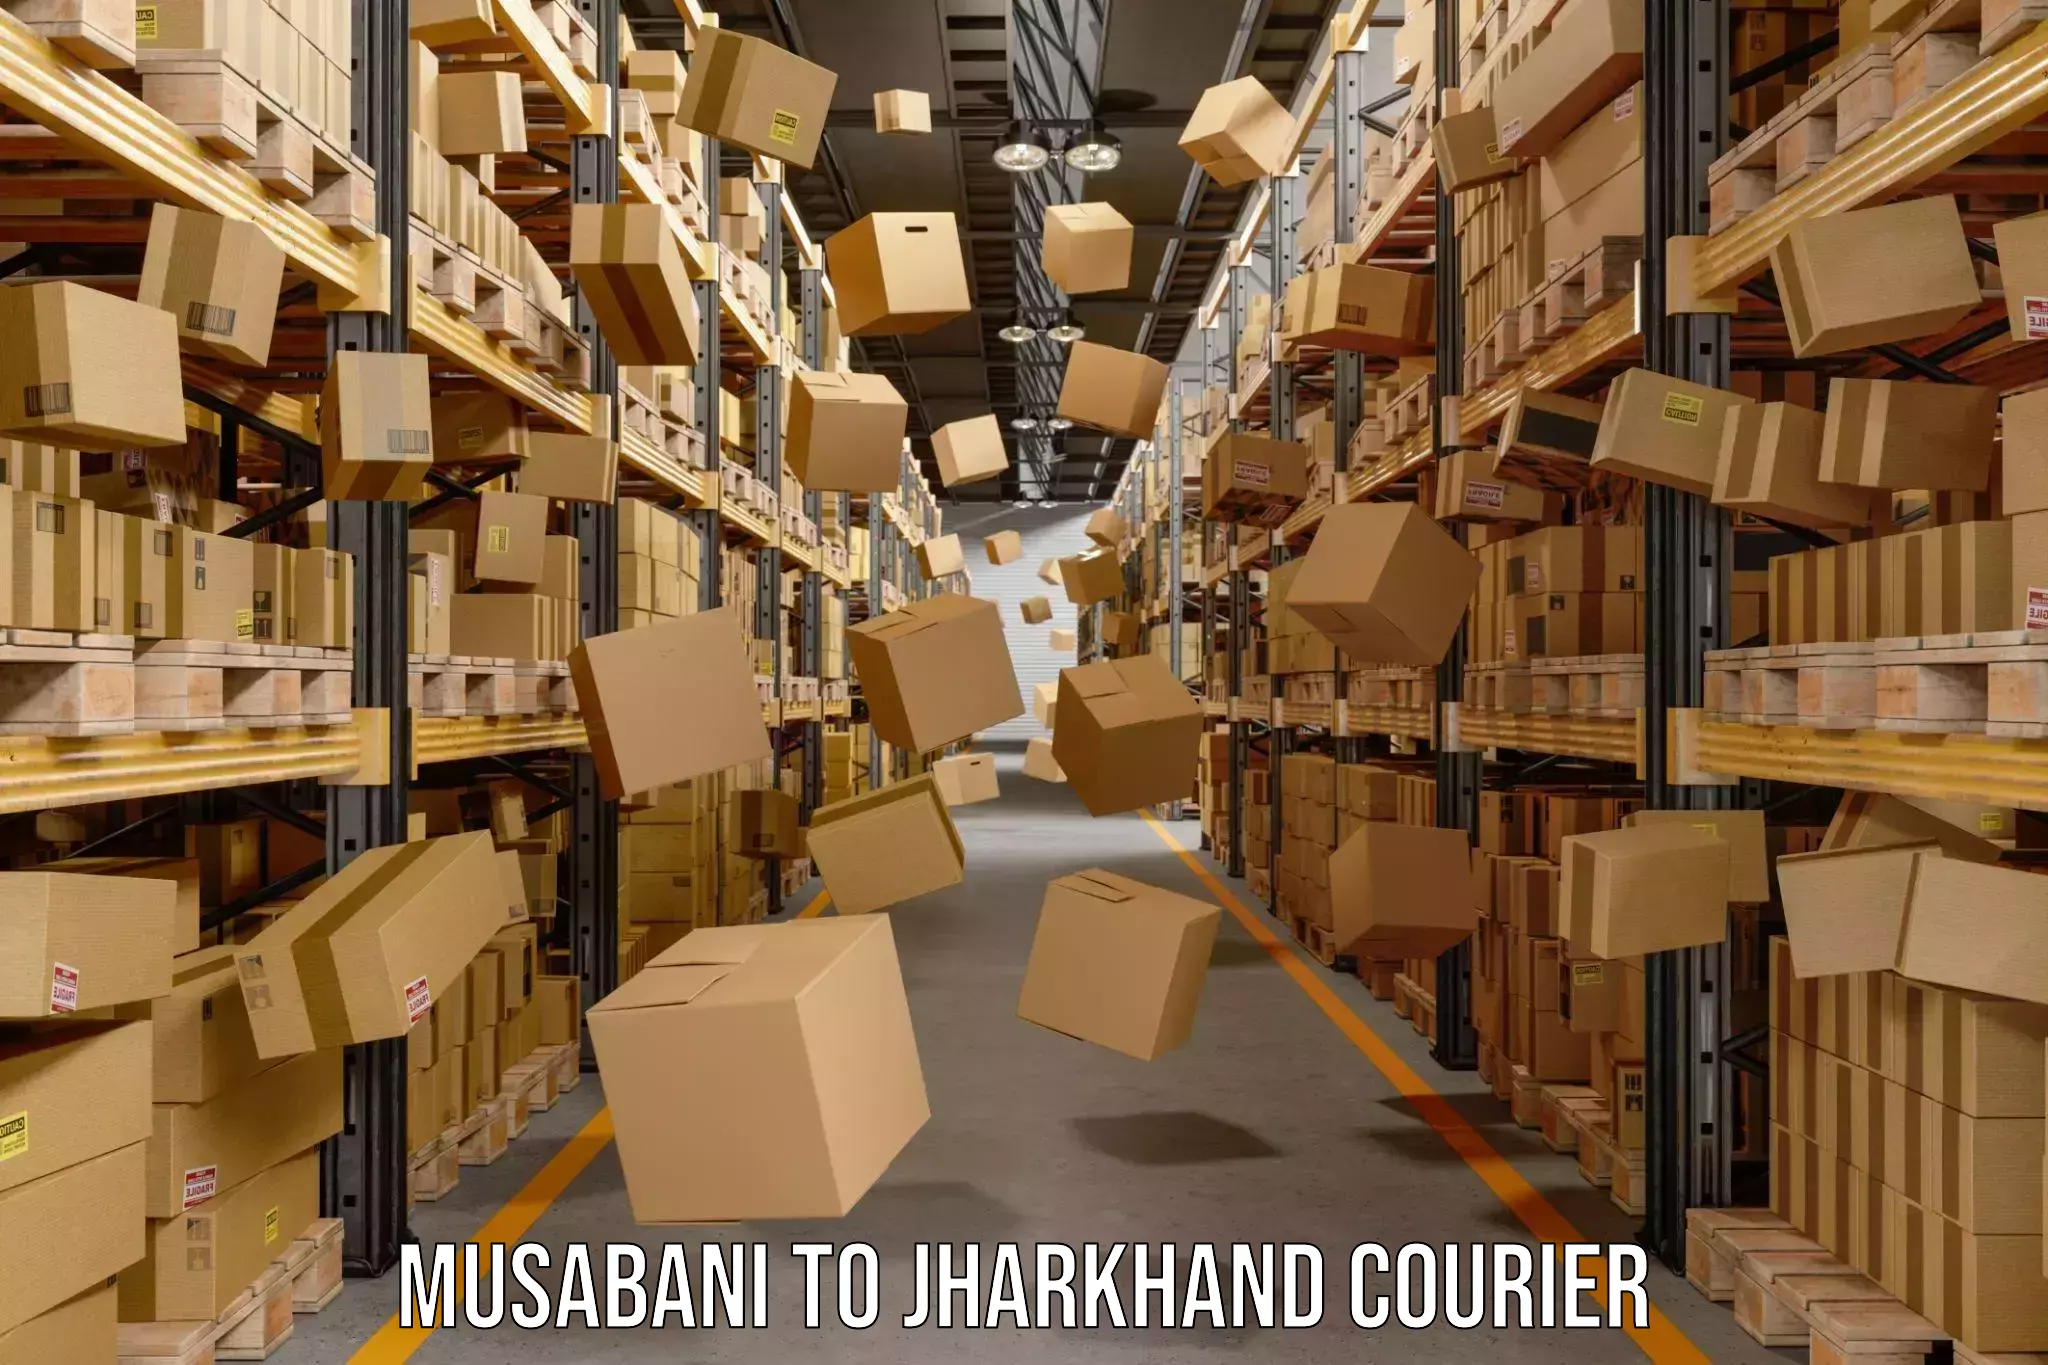 Courier service comparison Musabani to Bero Ranchi